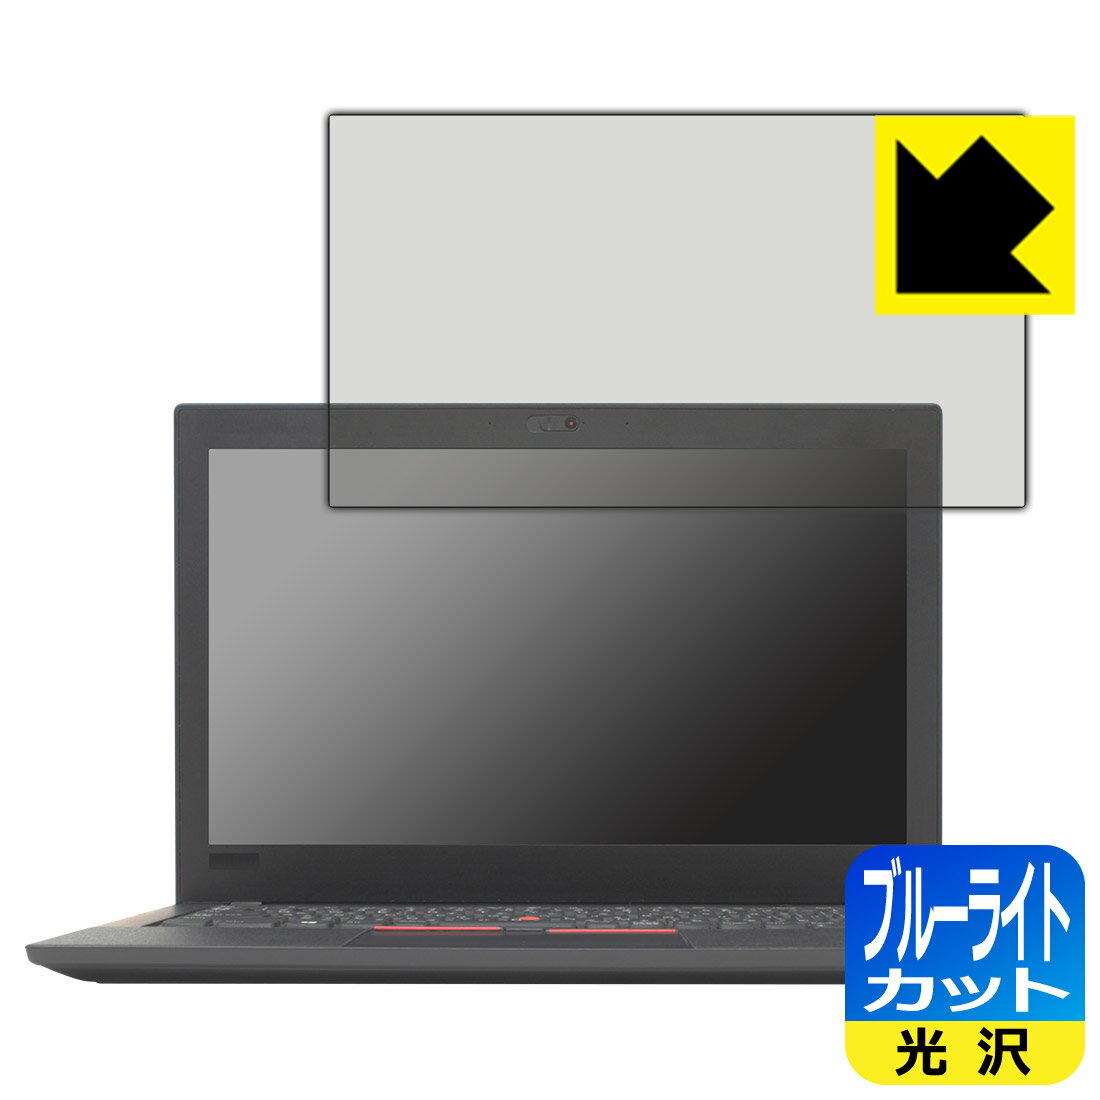 ブルーライトカット【光沢】保護フィルム ThinkPad X280 日本製 自社製造直販